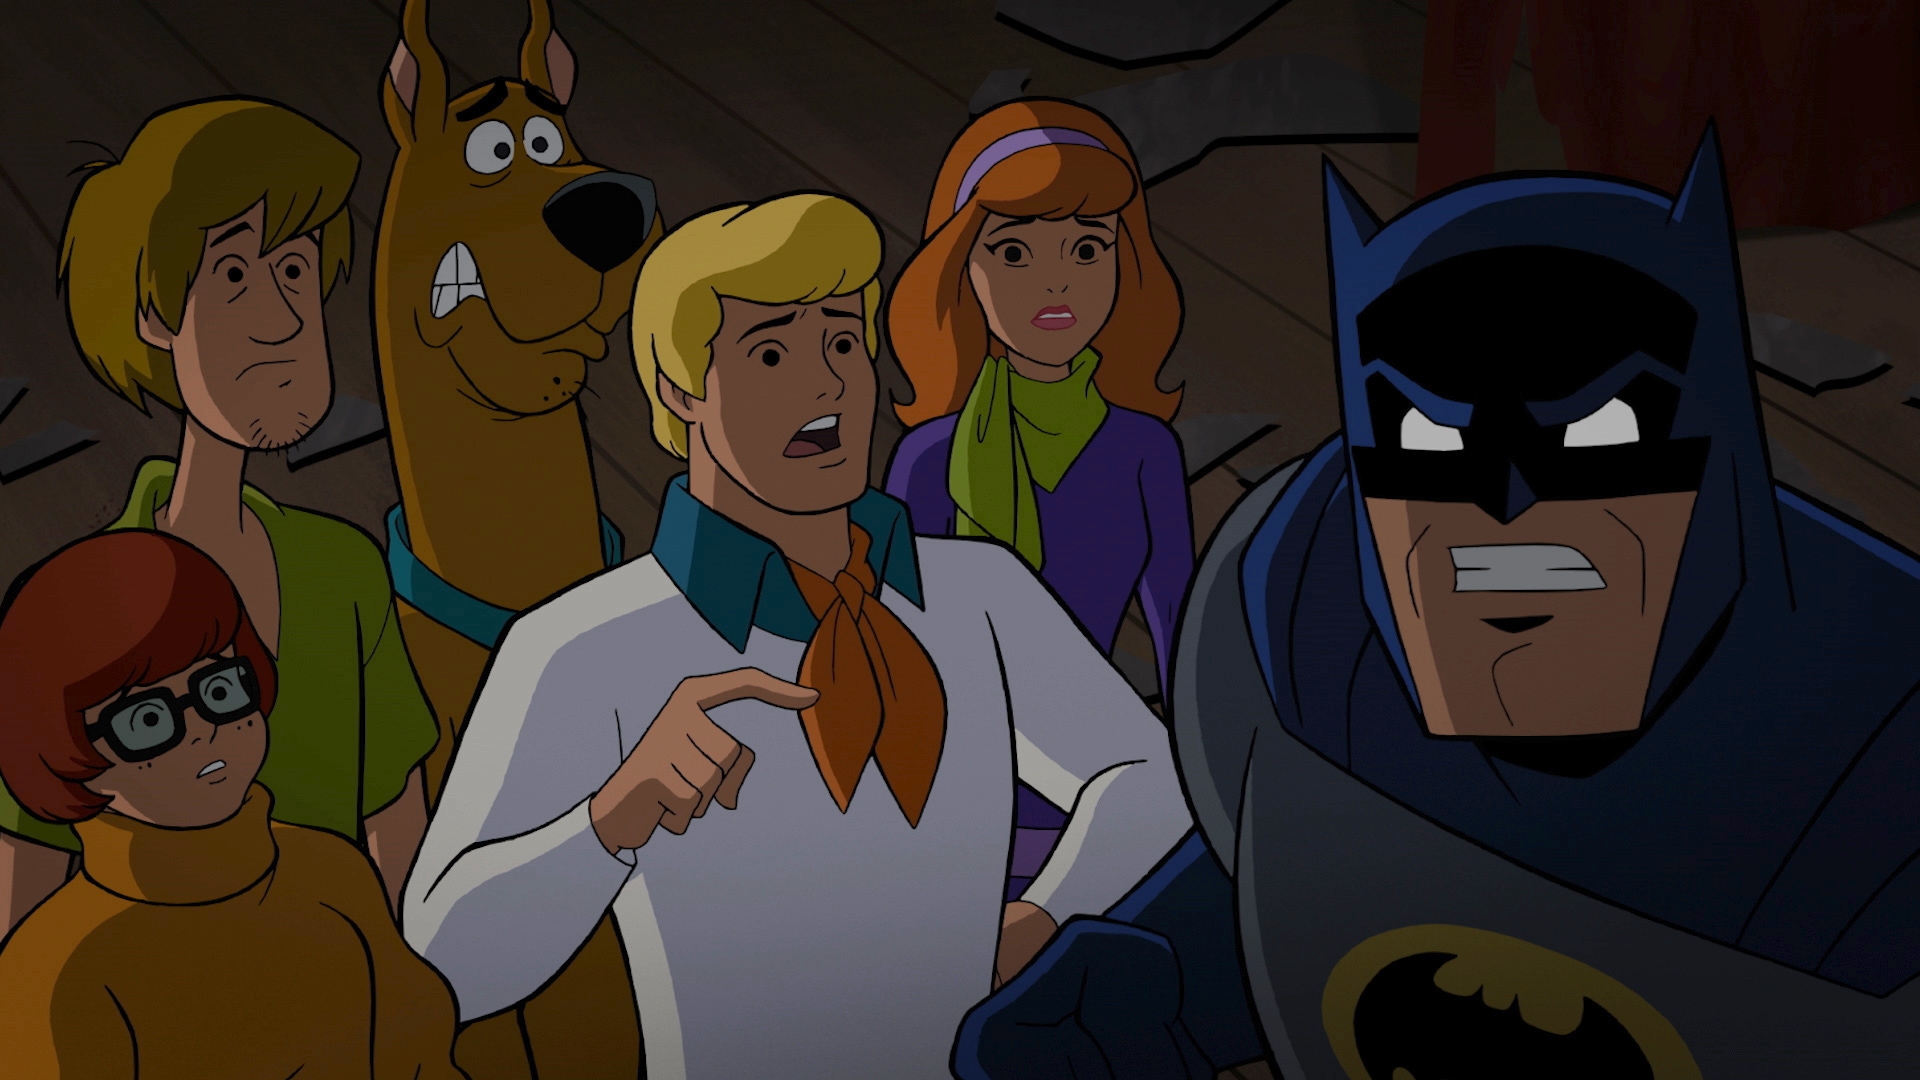 Scooby doo intro. Скуби-Ду и лига справедливости 2021. Скуби Ду и Бэтмен. Скуби-Ду встречает Бэтмена.